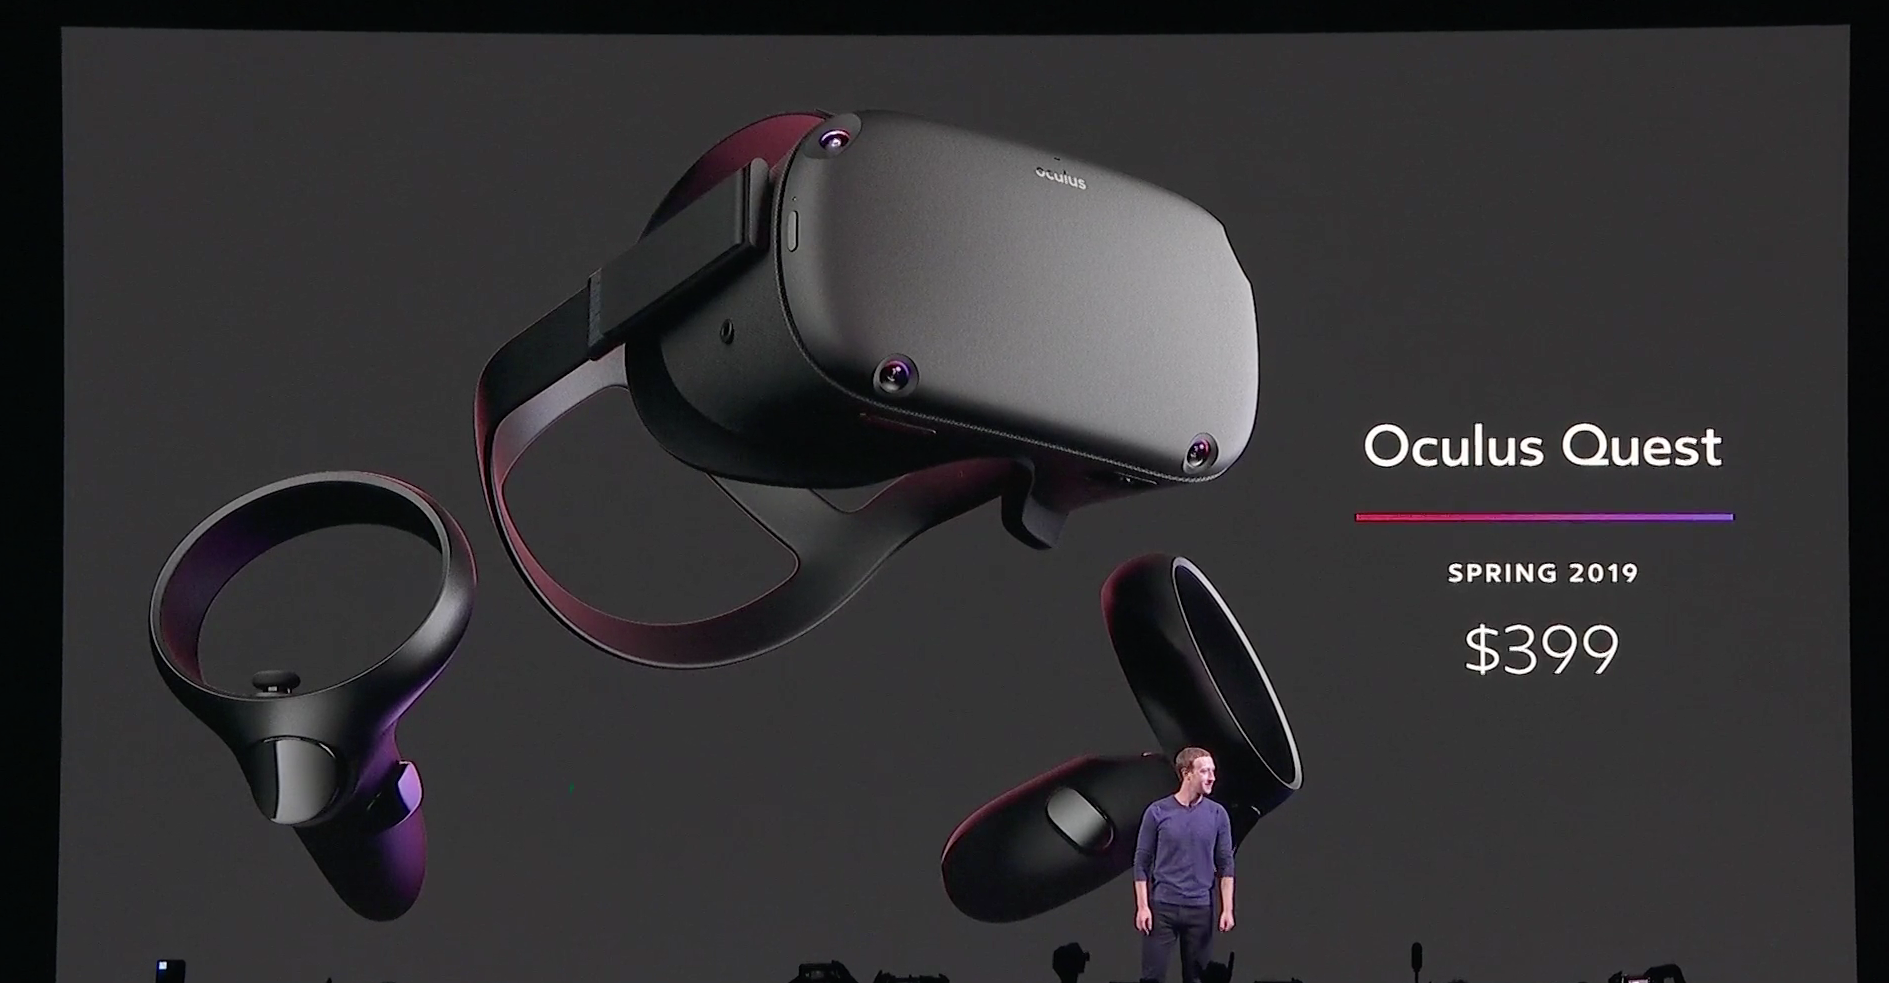 Indtil nu Giotto Dibondon uudgrundelig Facebook's newest VR headset, Oculus Quest, ships in the spring for $399 |  TechCrunch